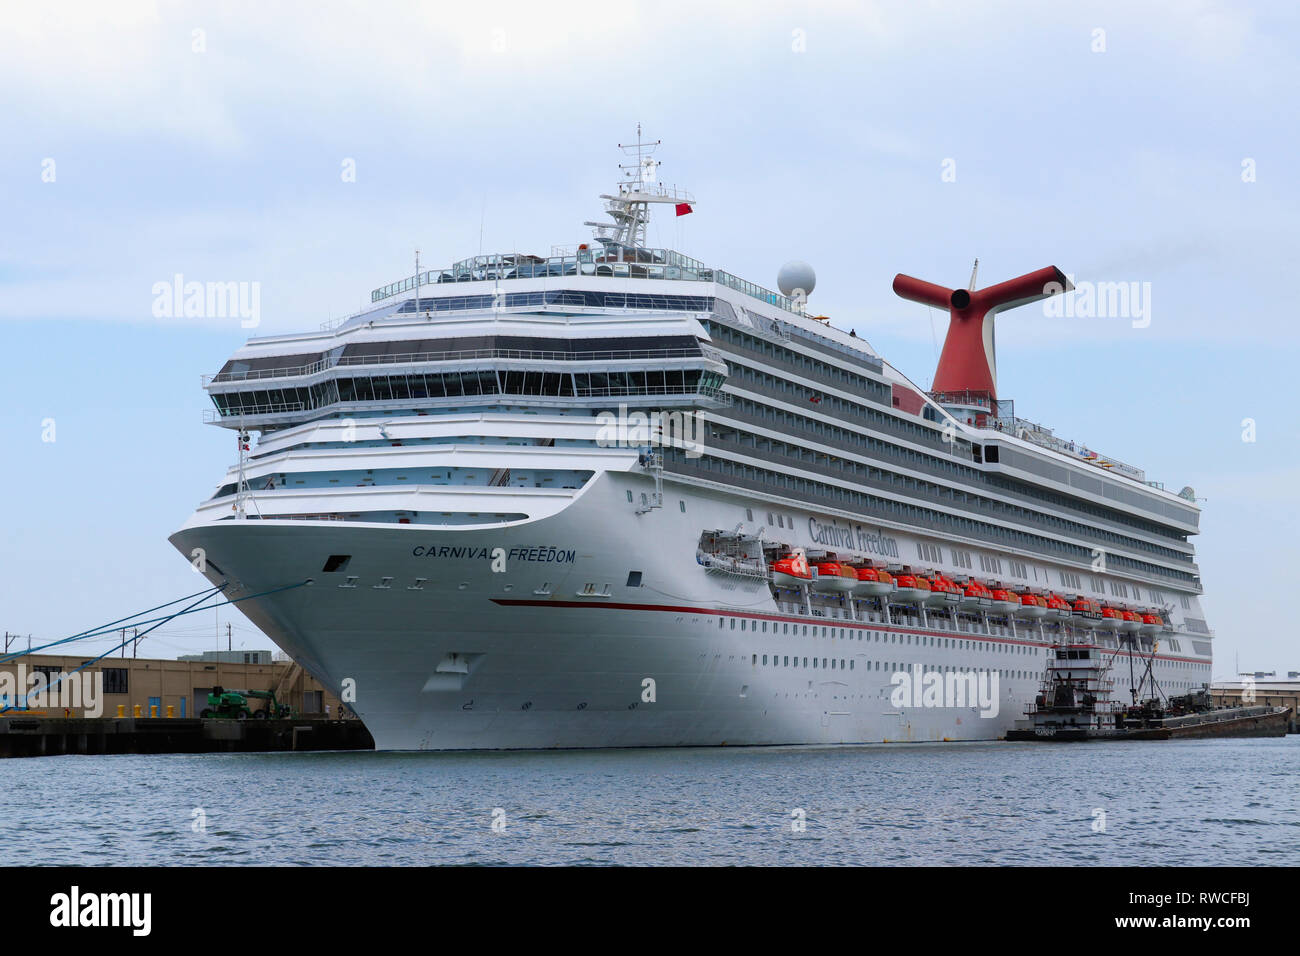 GALVESTON, Texas, USA - 9 juin 2018 : Carnival Freedom Cruise Liner, amarré au Port de Galveston, Texas. Exploité par Carnival Cruise Line. Banque D'Images